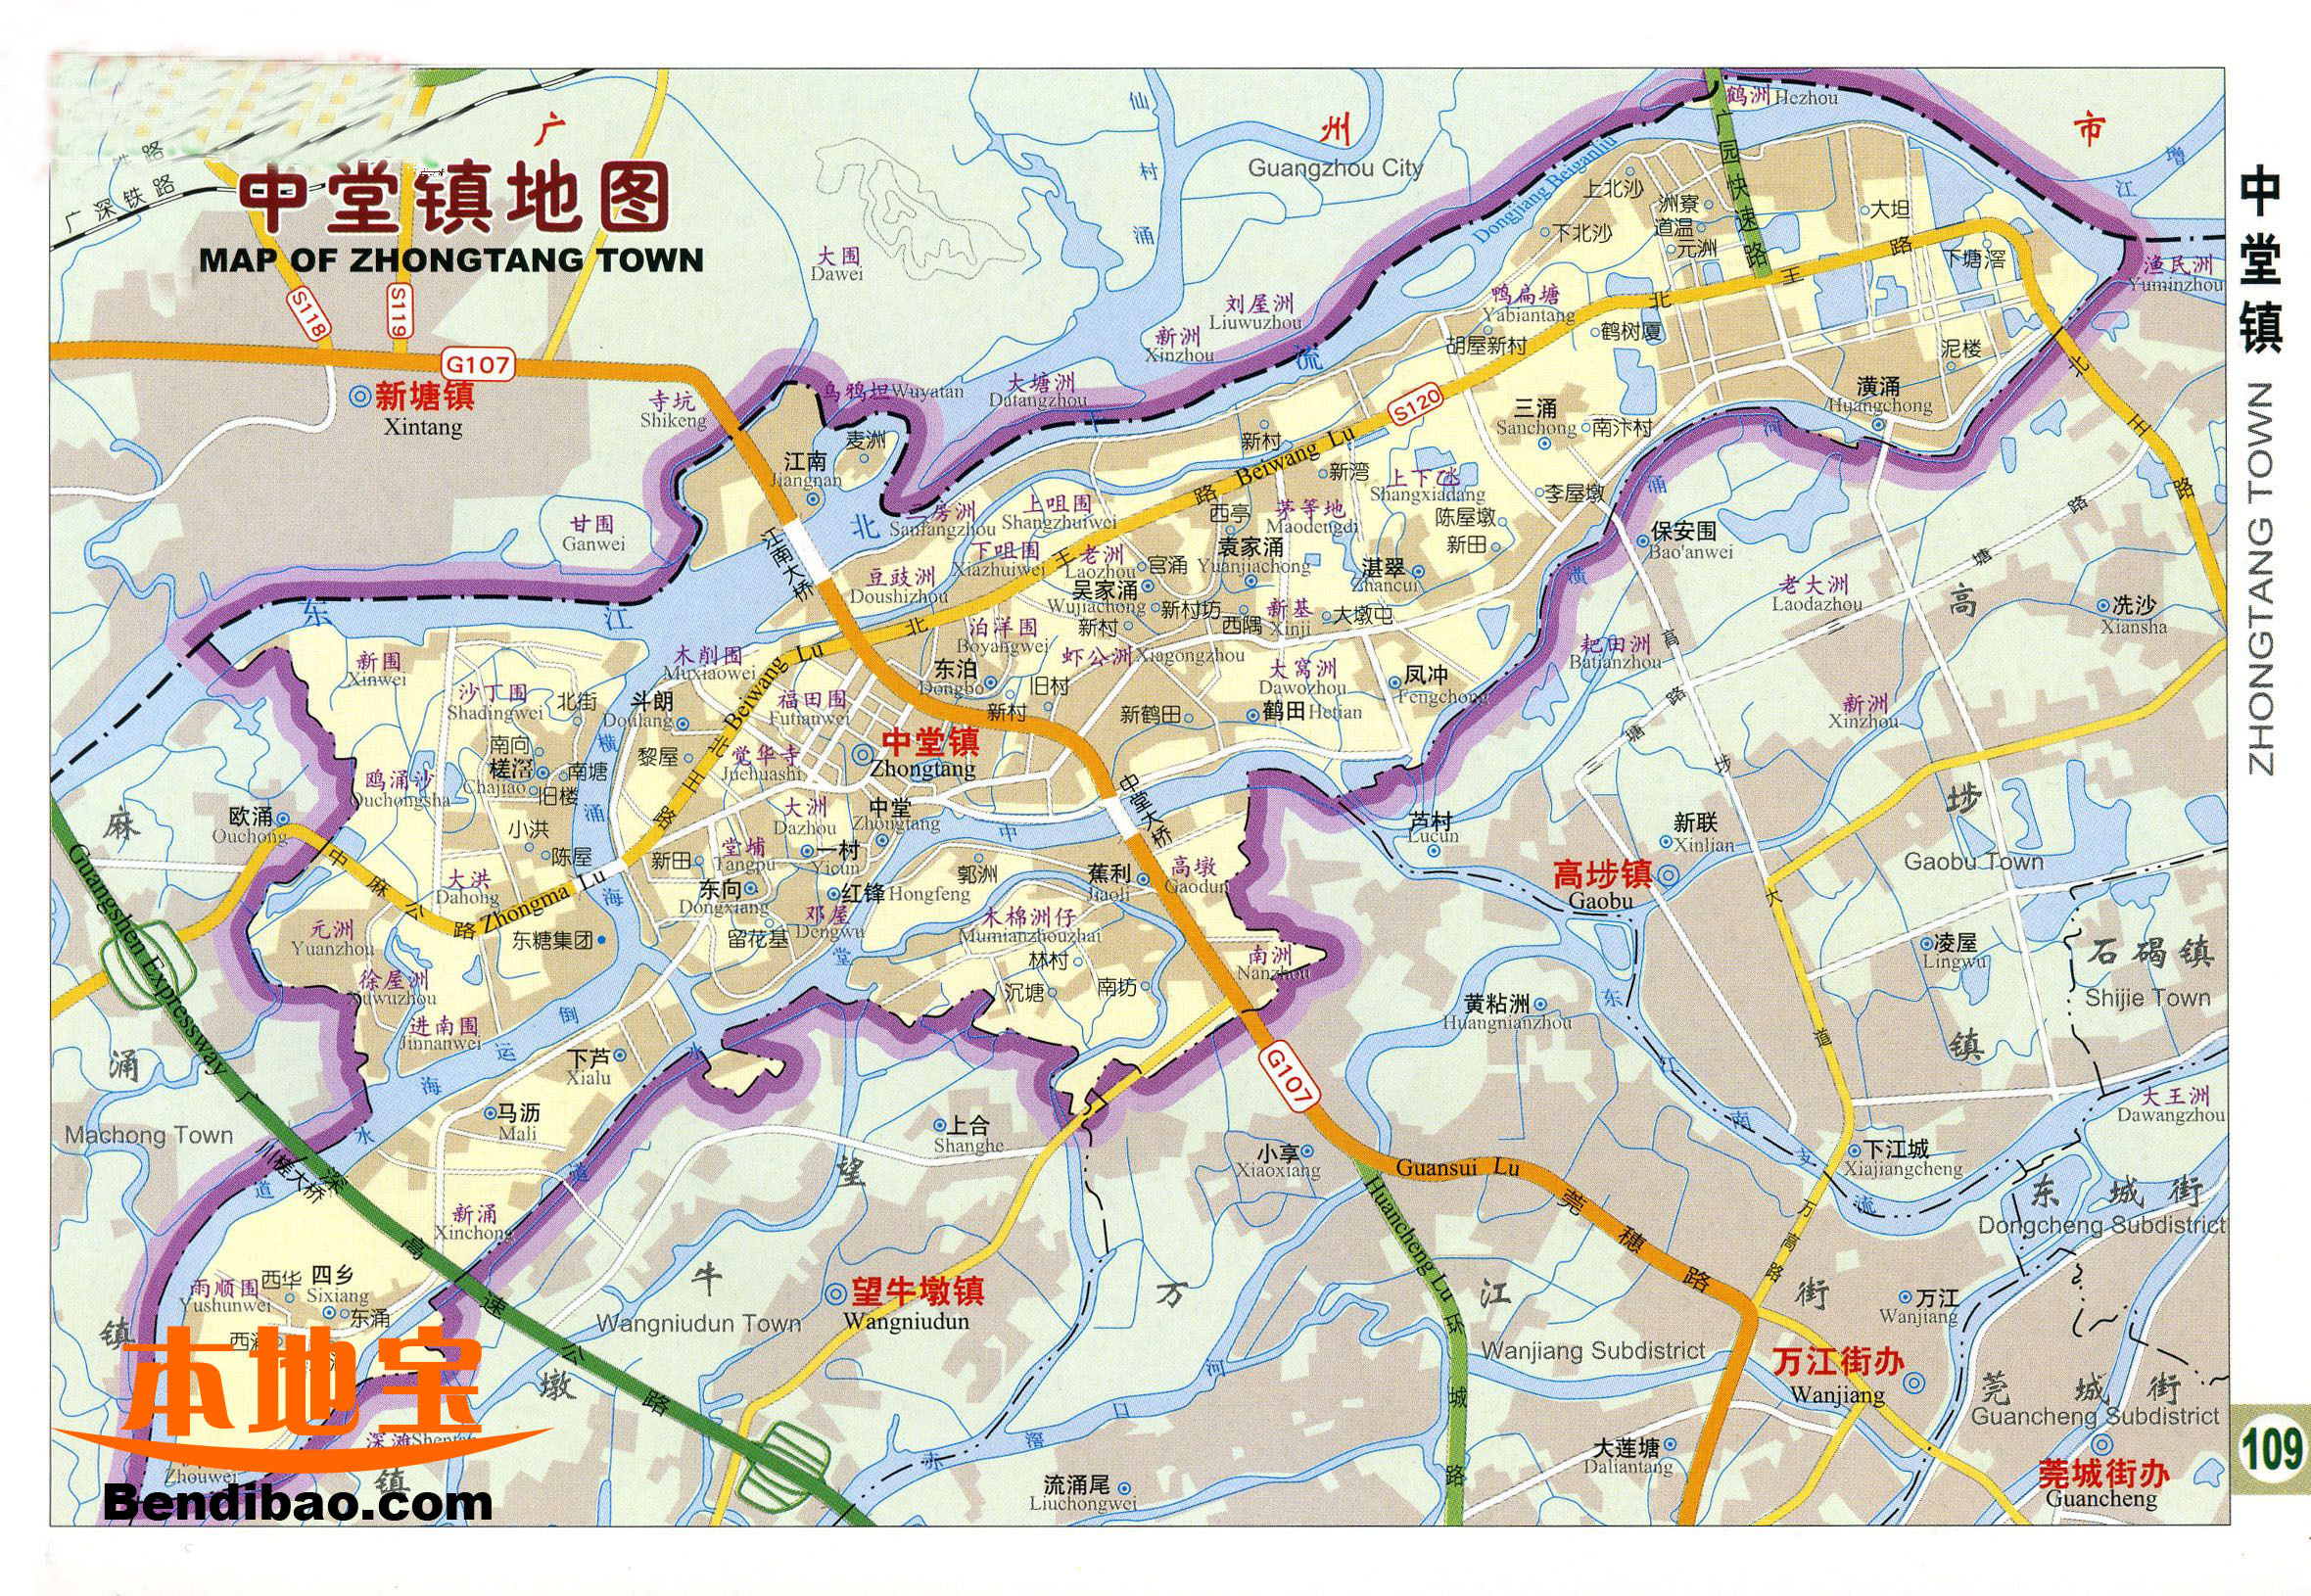 中堂镇位于广东省东莞市西北部,全镇面积60平方公里,下辖20个村(社区)